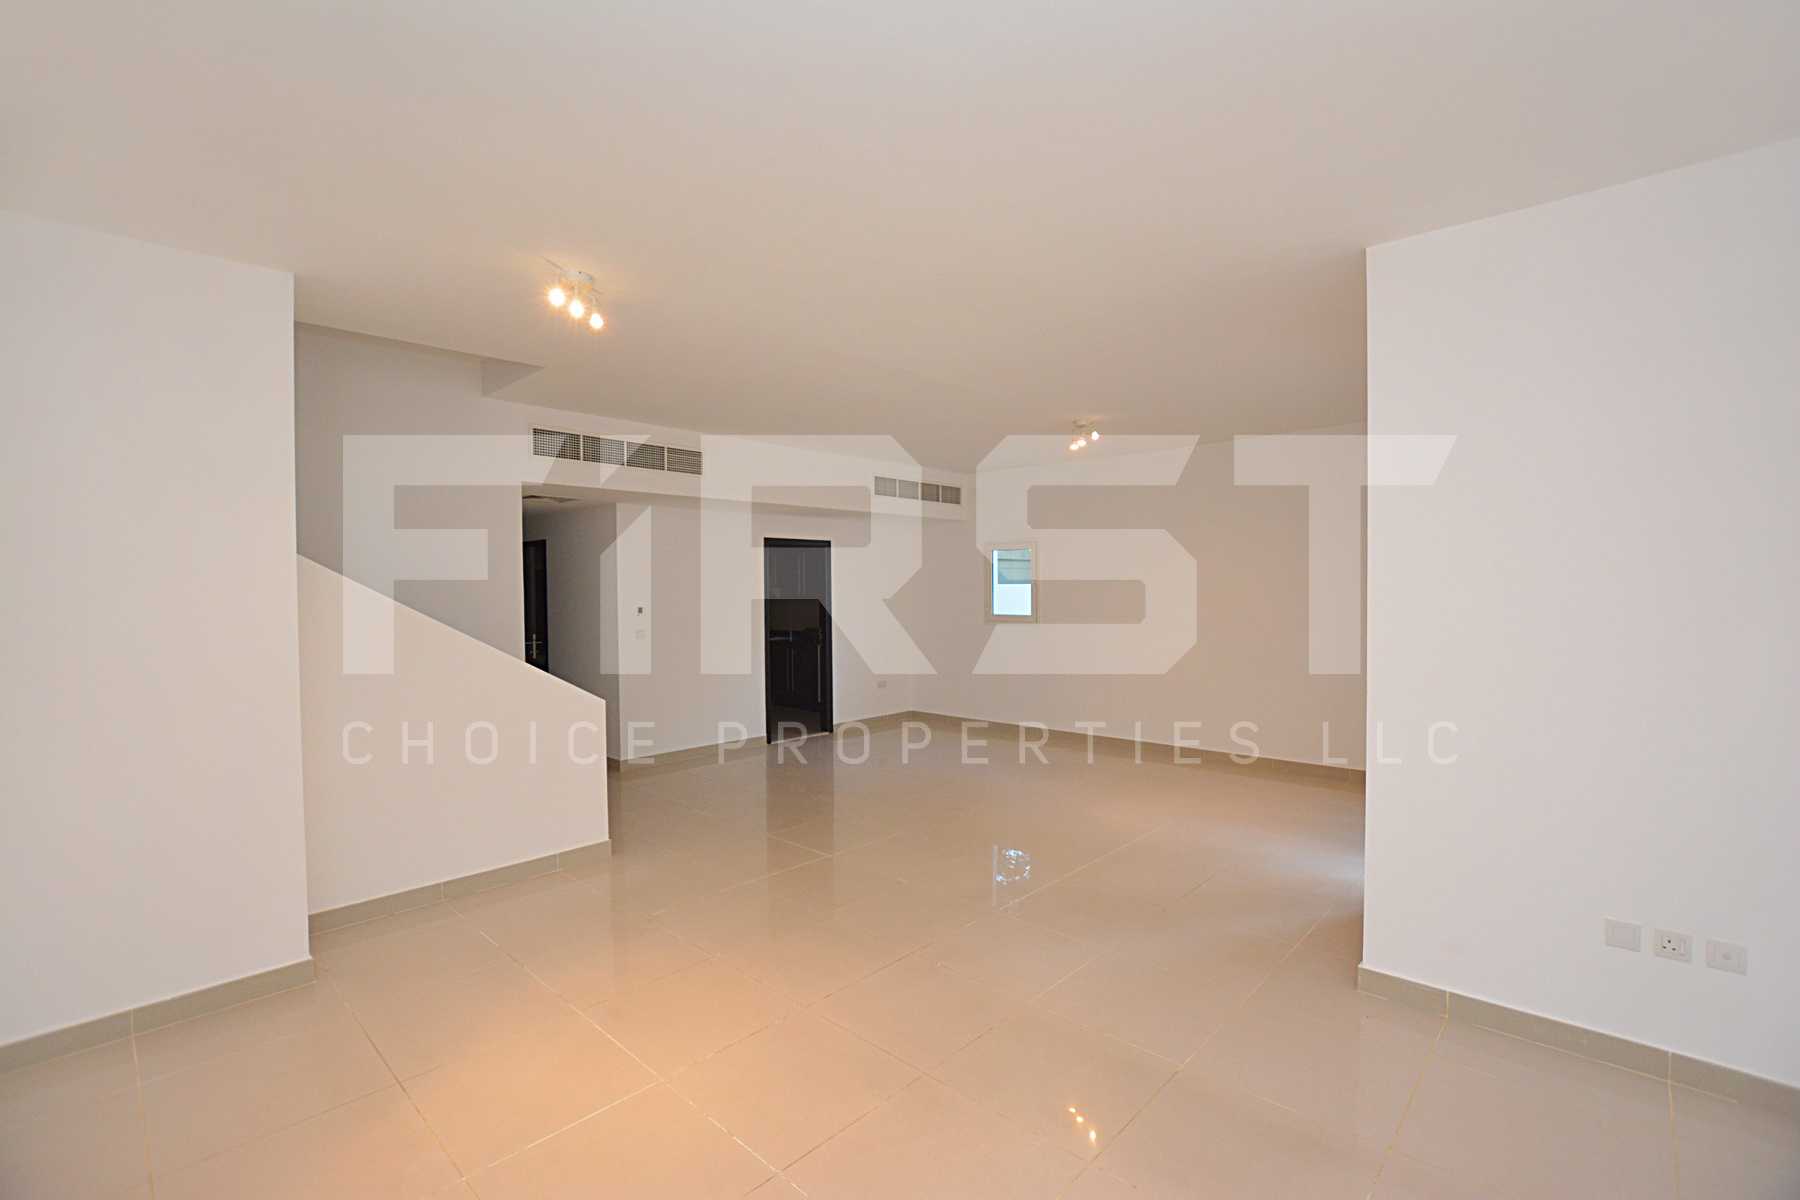 Internal Photo of 5 Bedroom Villa in Al Reef Villas 348.3 sq.m 3749 sq.ft (99).jpg